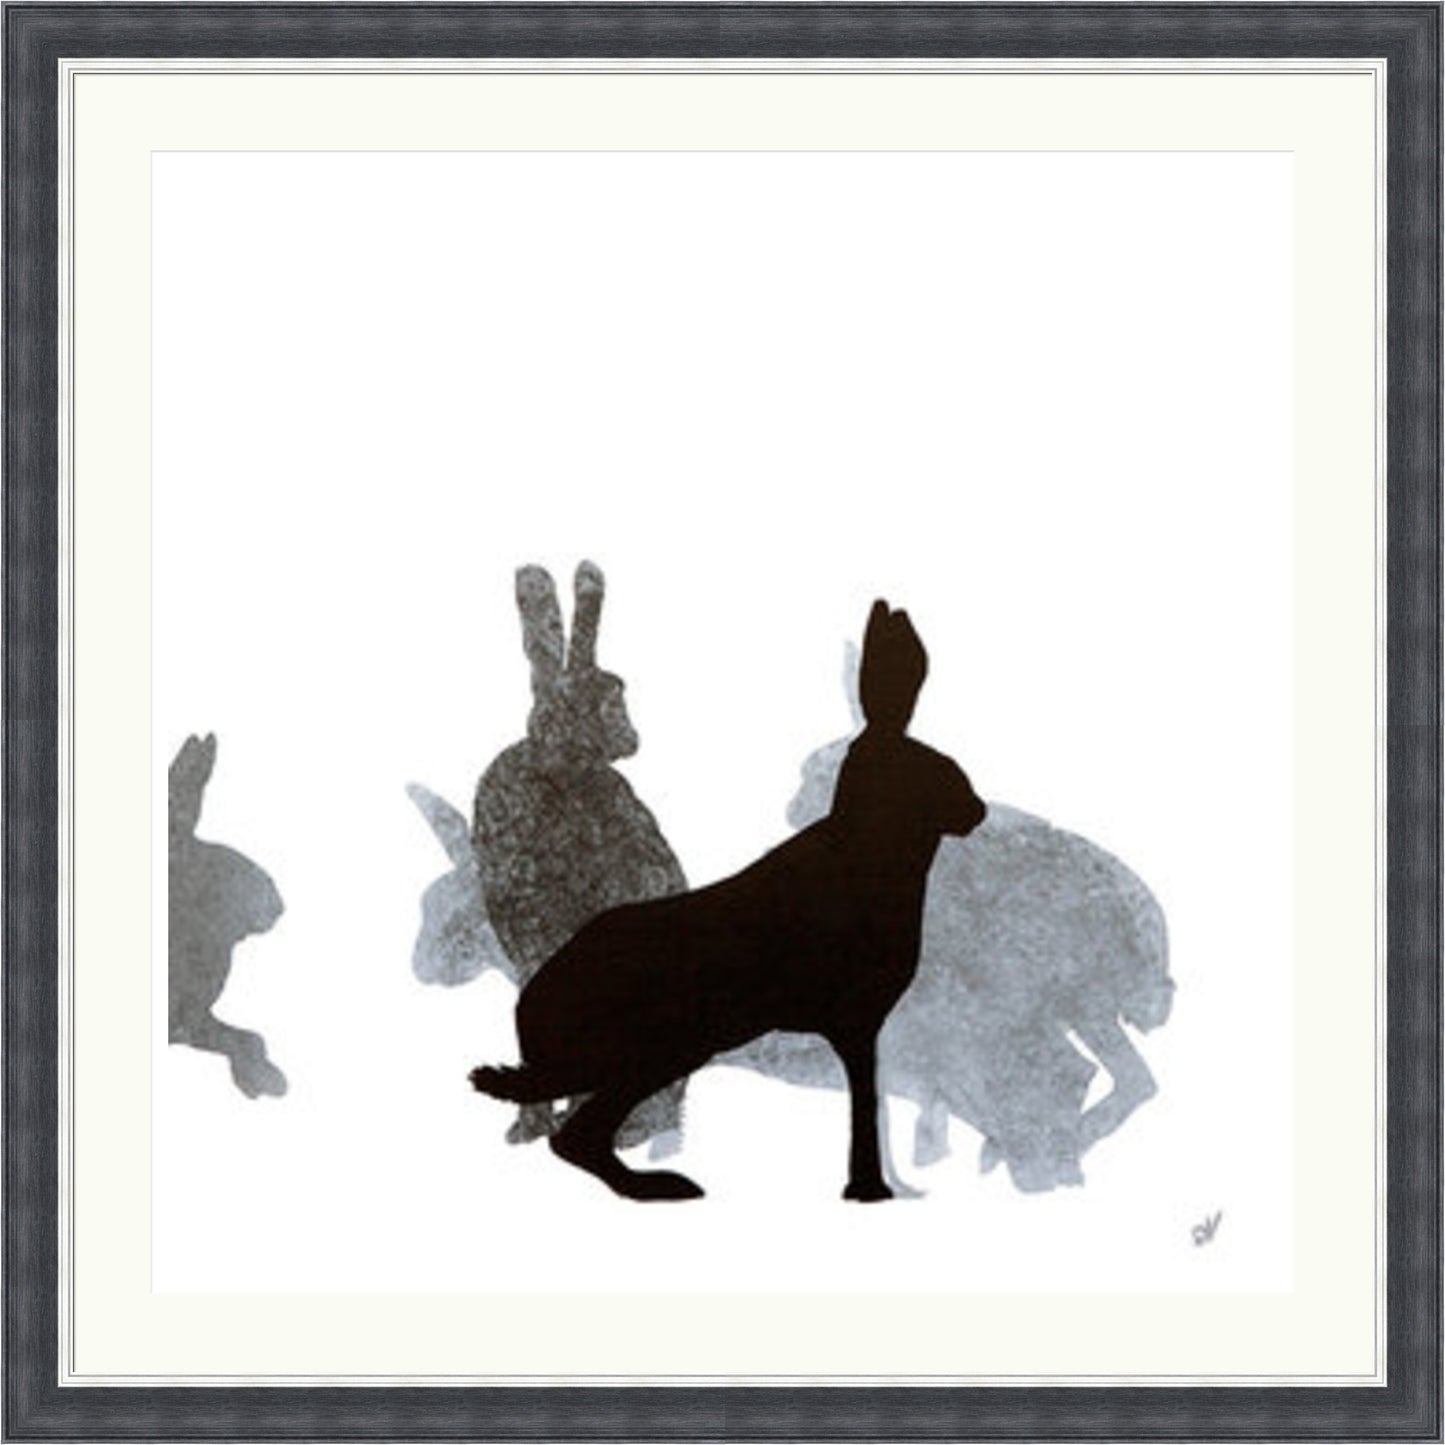 Hare by Sandra Vick